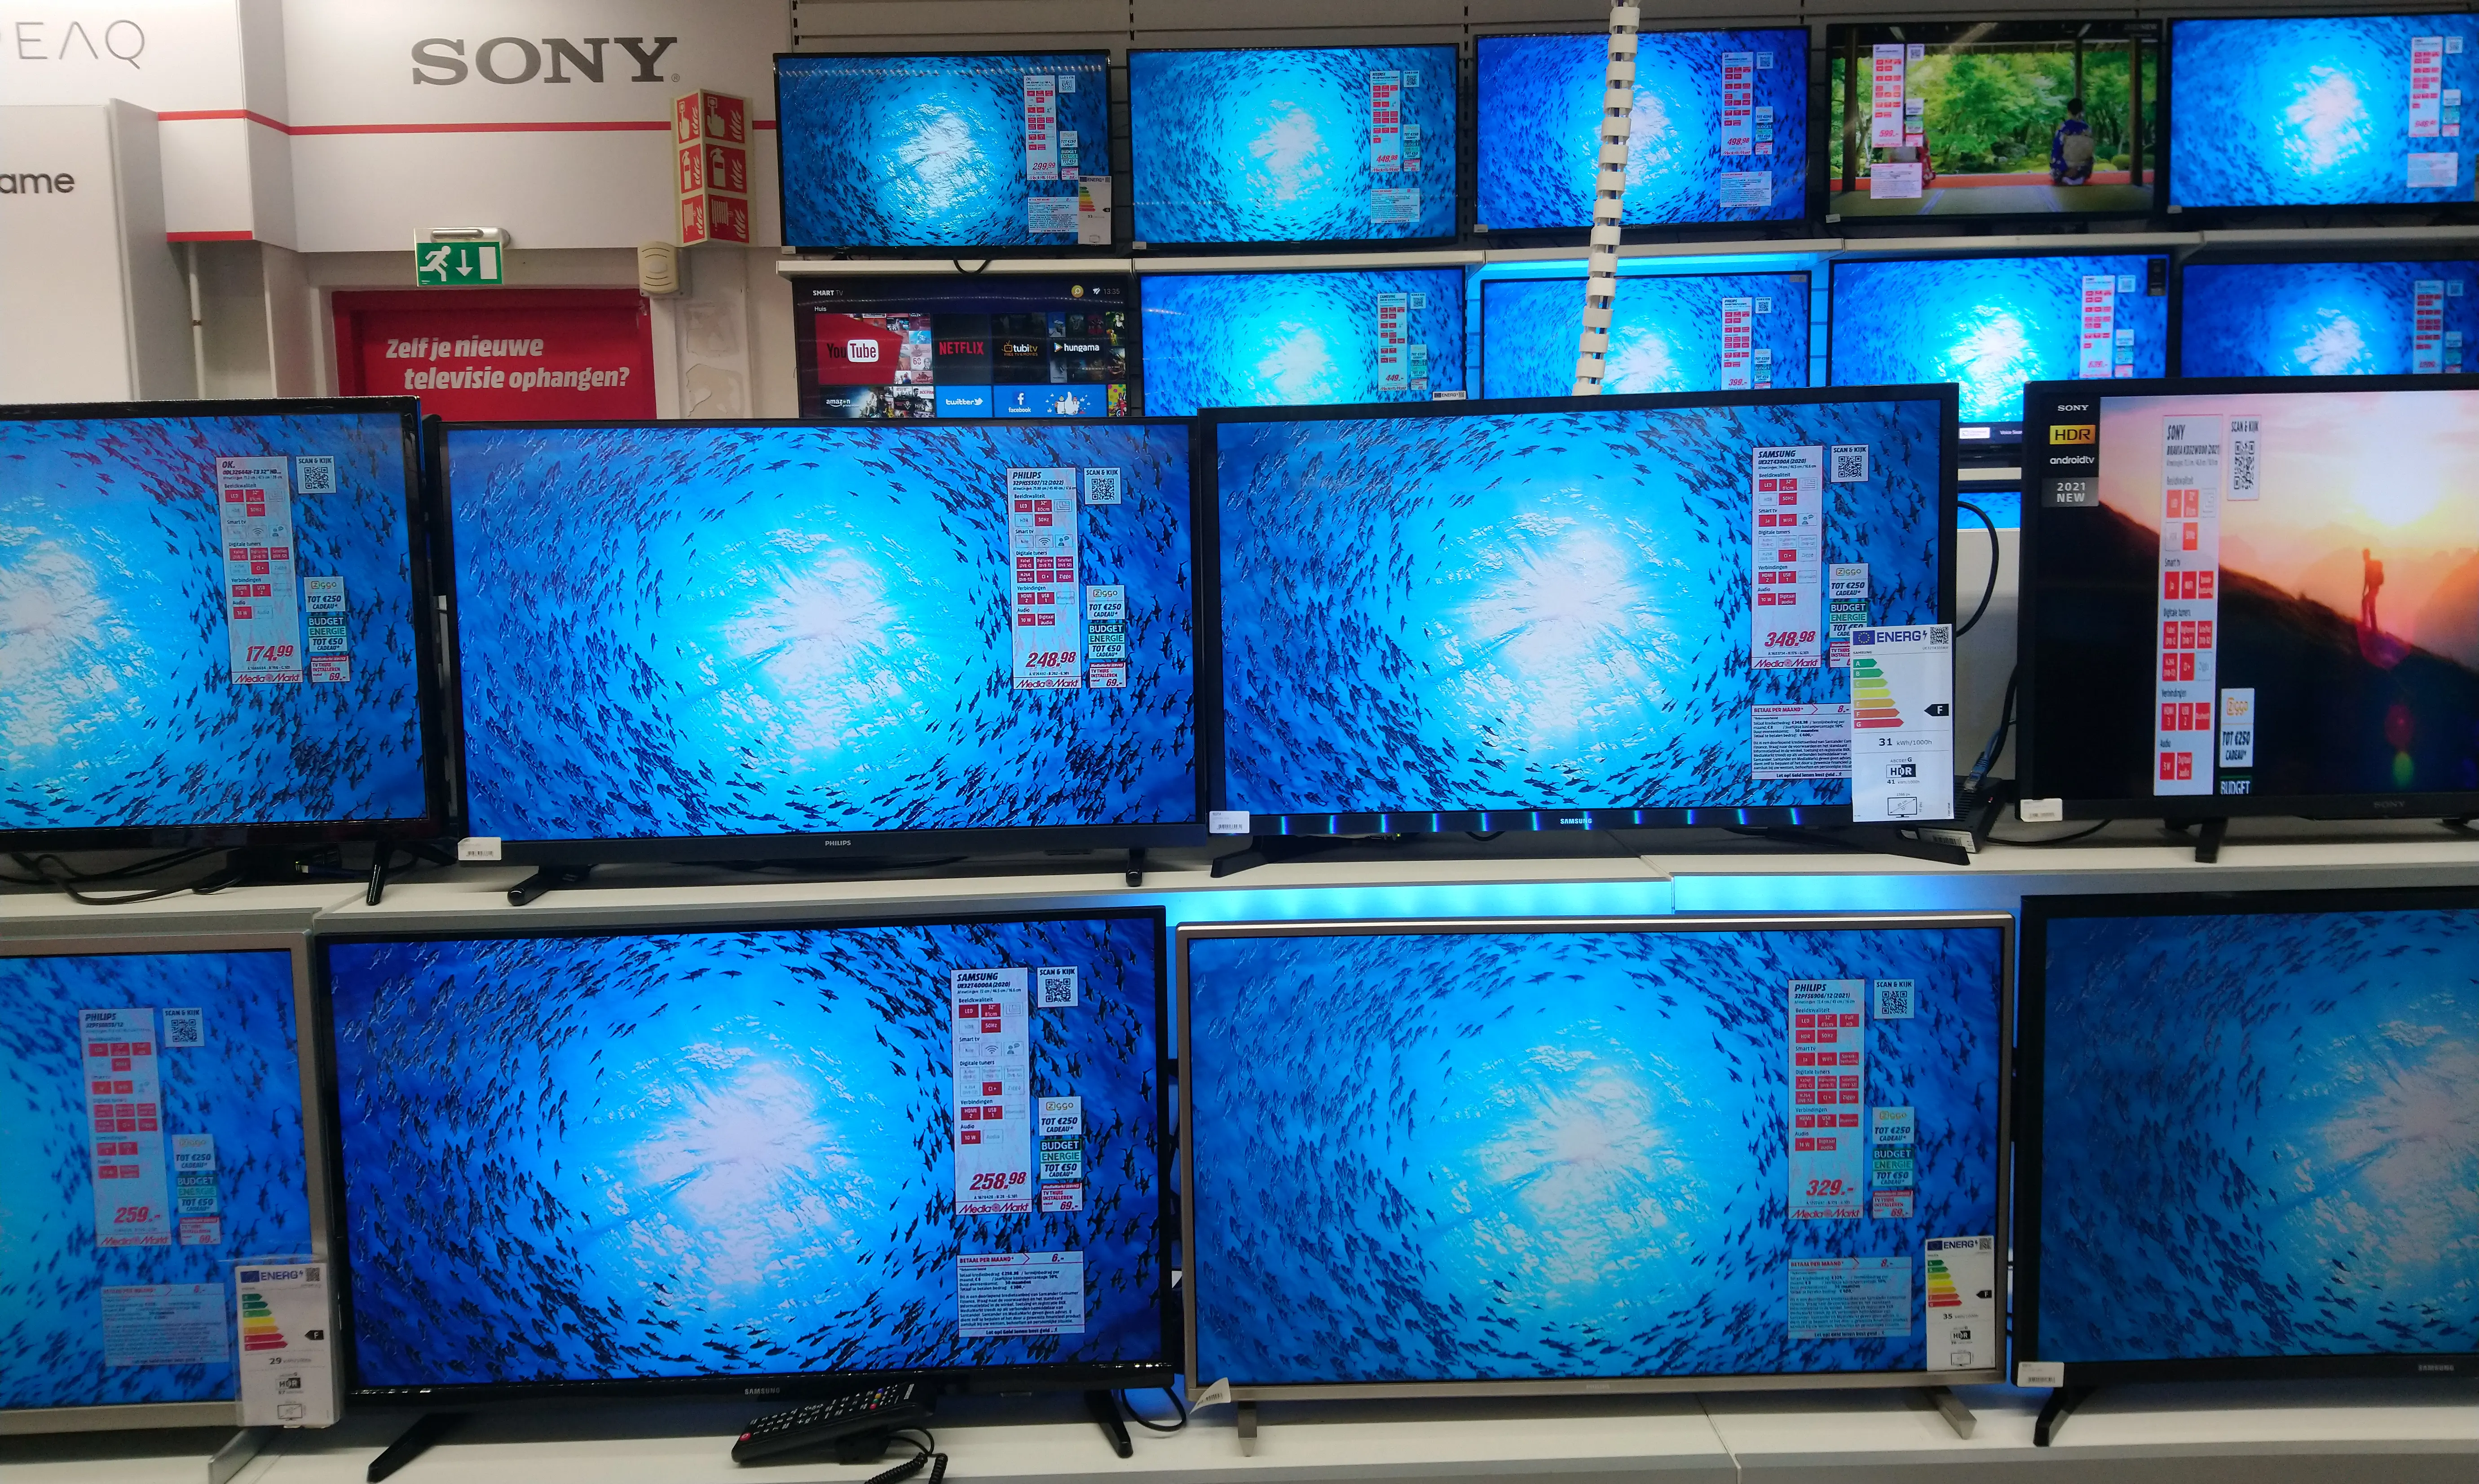 Zelfde beeld op meerdere televisies met verschillende kleuren